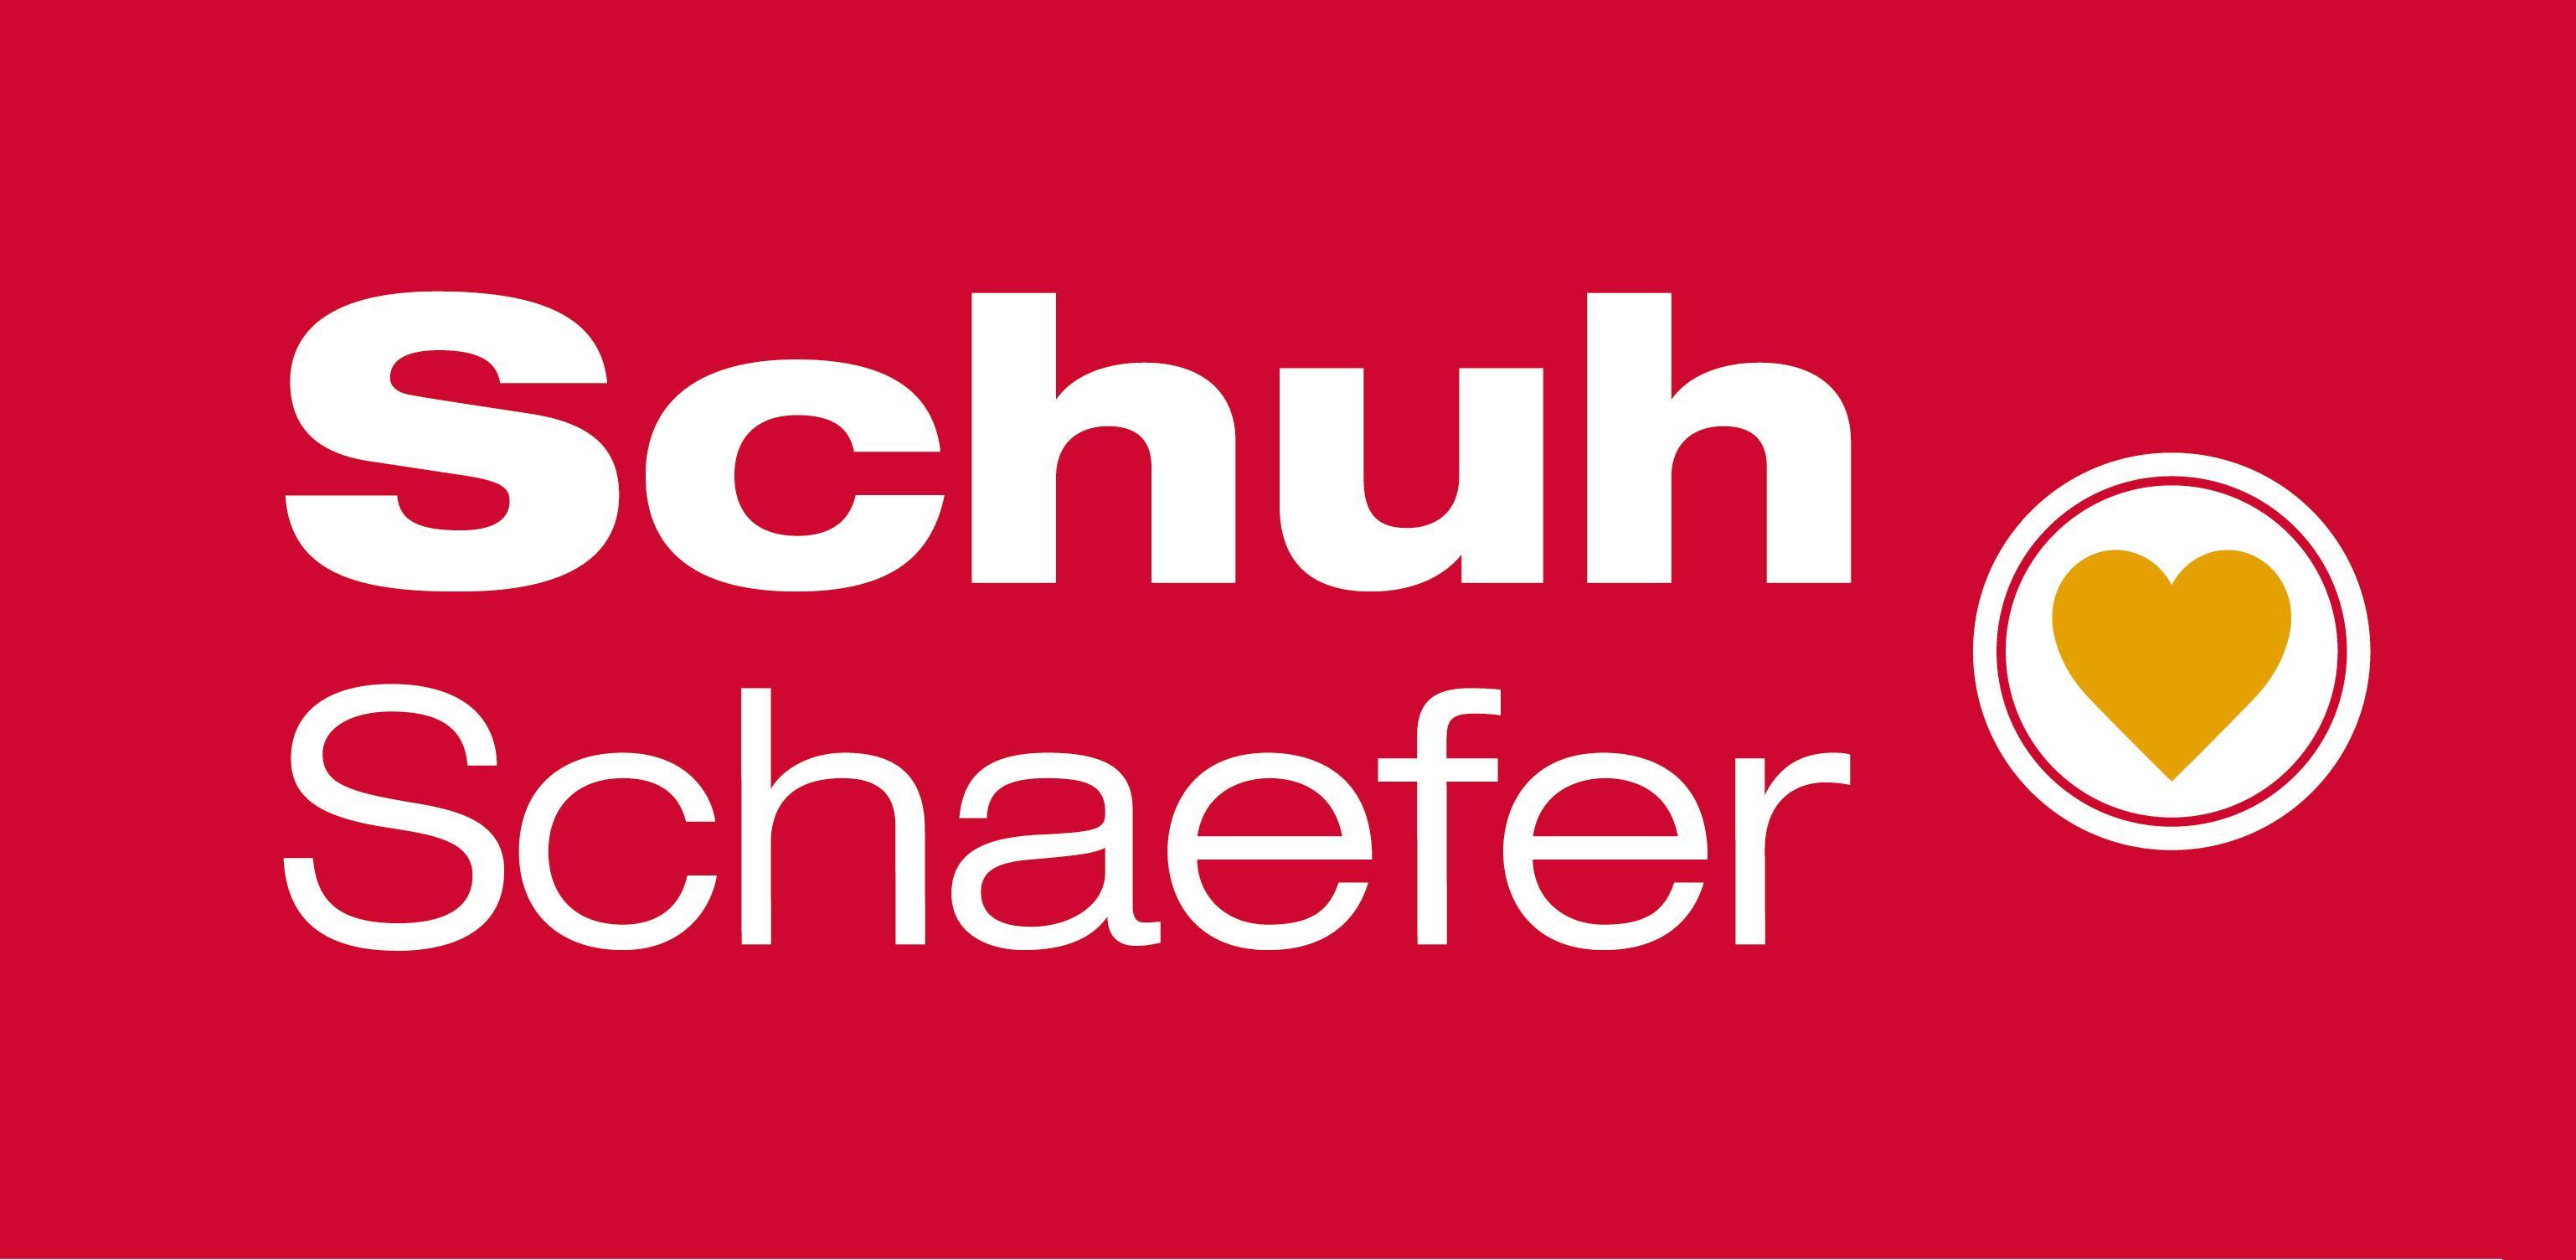 Schuh-Schaefer GmbH